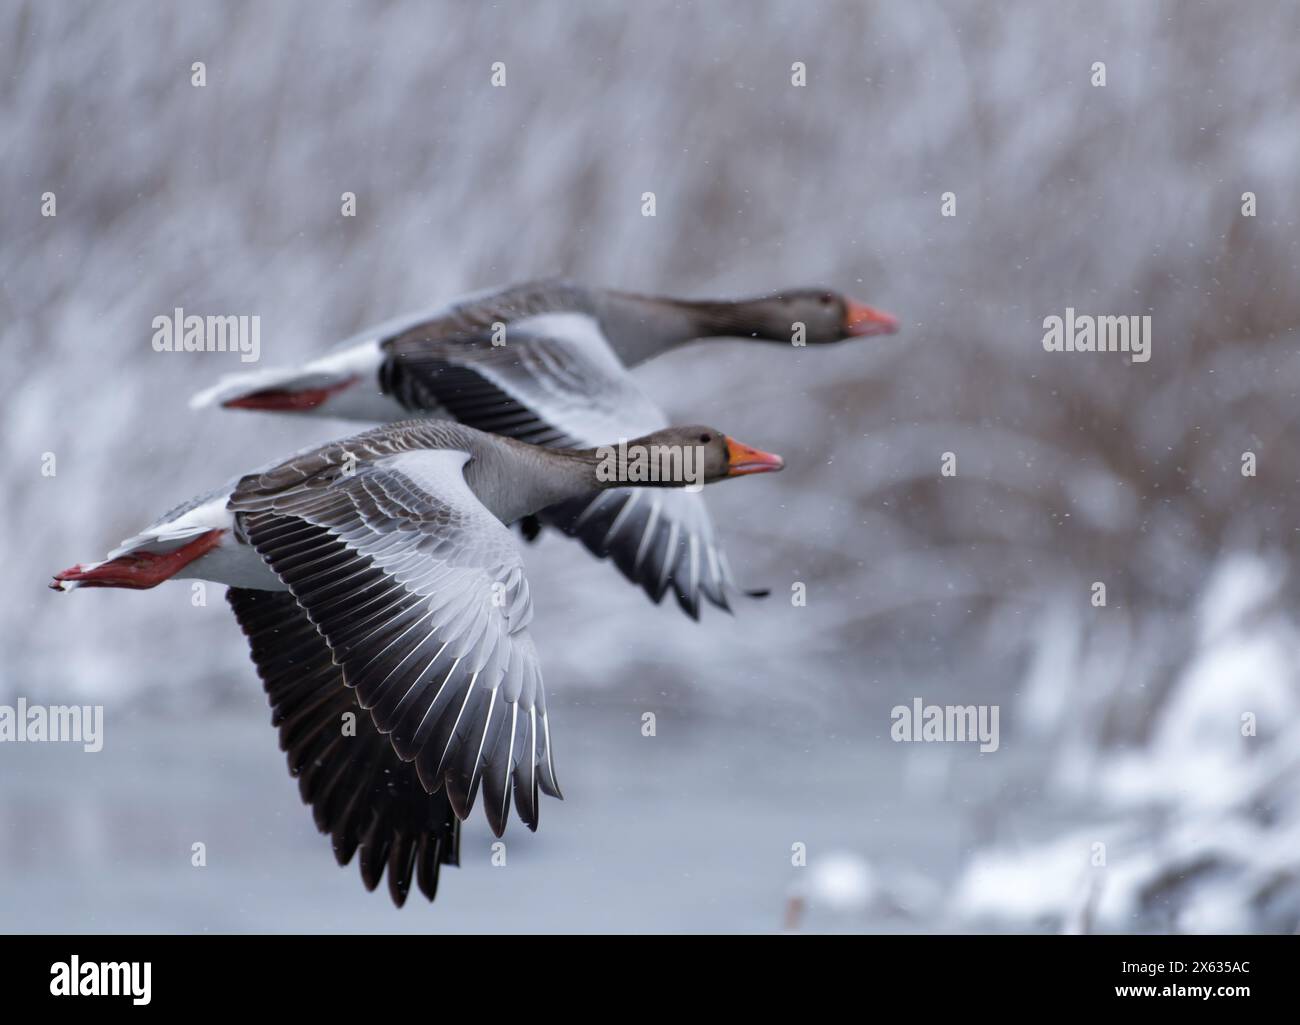 Zwei Graugänse fliegen vor schneebedecktem Schilf nach starkem Schneefall Ende April in Helsinki, Finnland, im kältesten brombeerwinter im Dezember Stockfoto